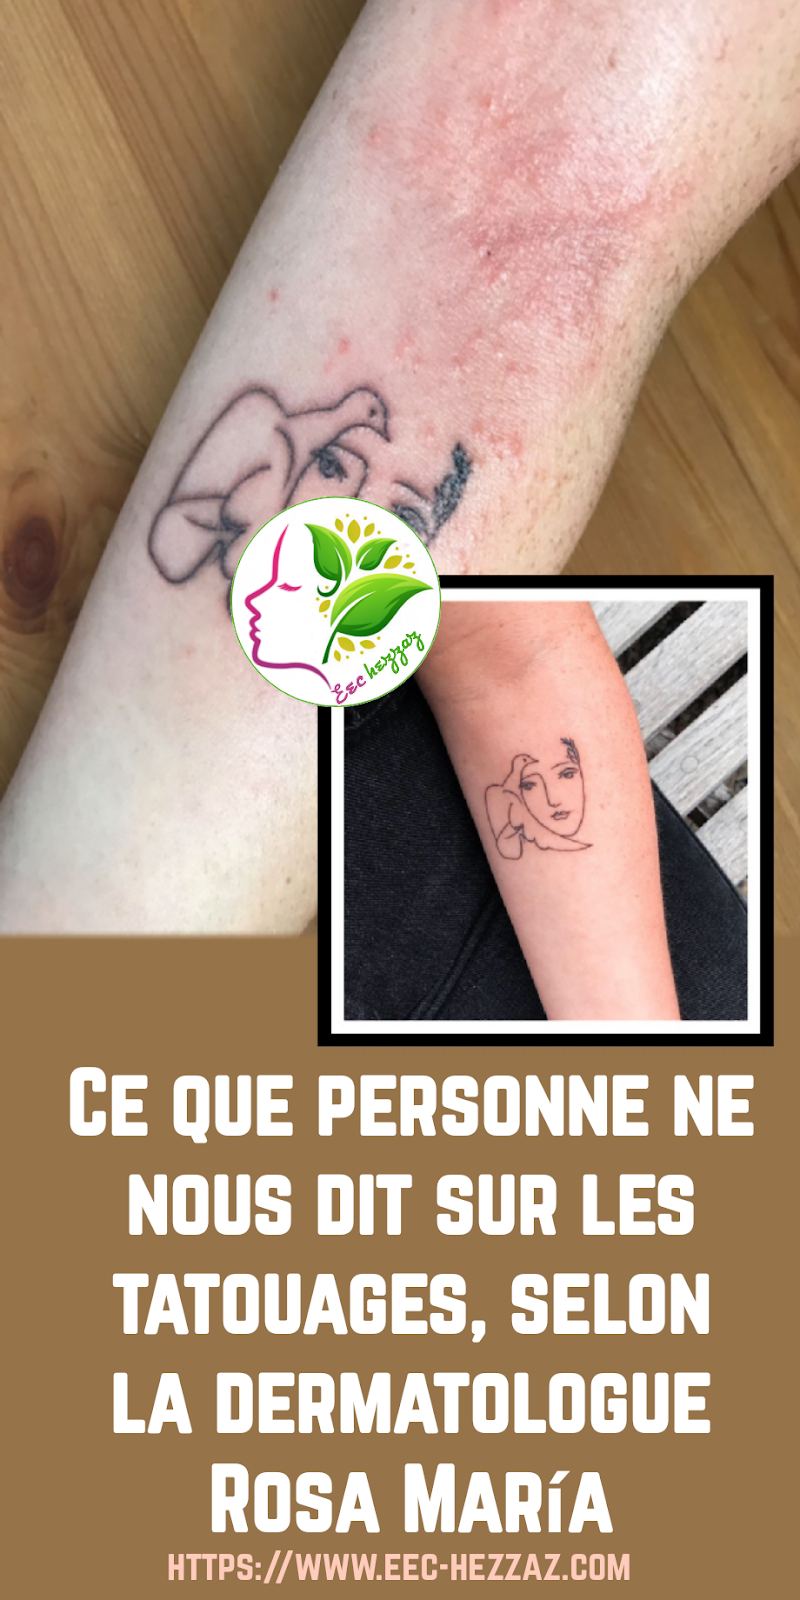 Ce que personne ne nous dit sur les tatouages, selon la dermatologue Rosa María